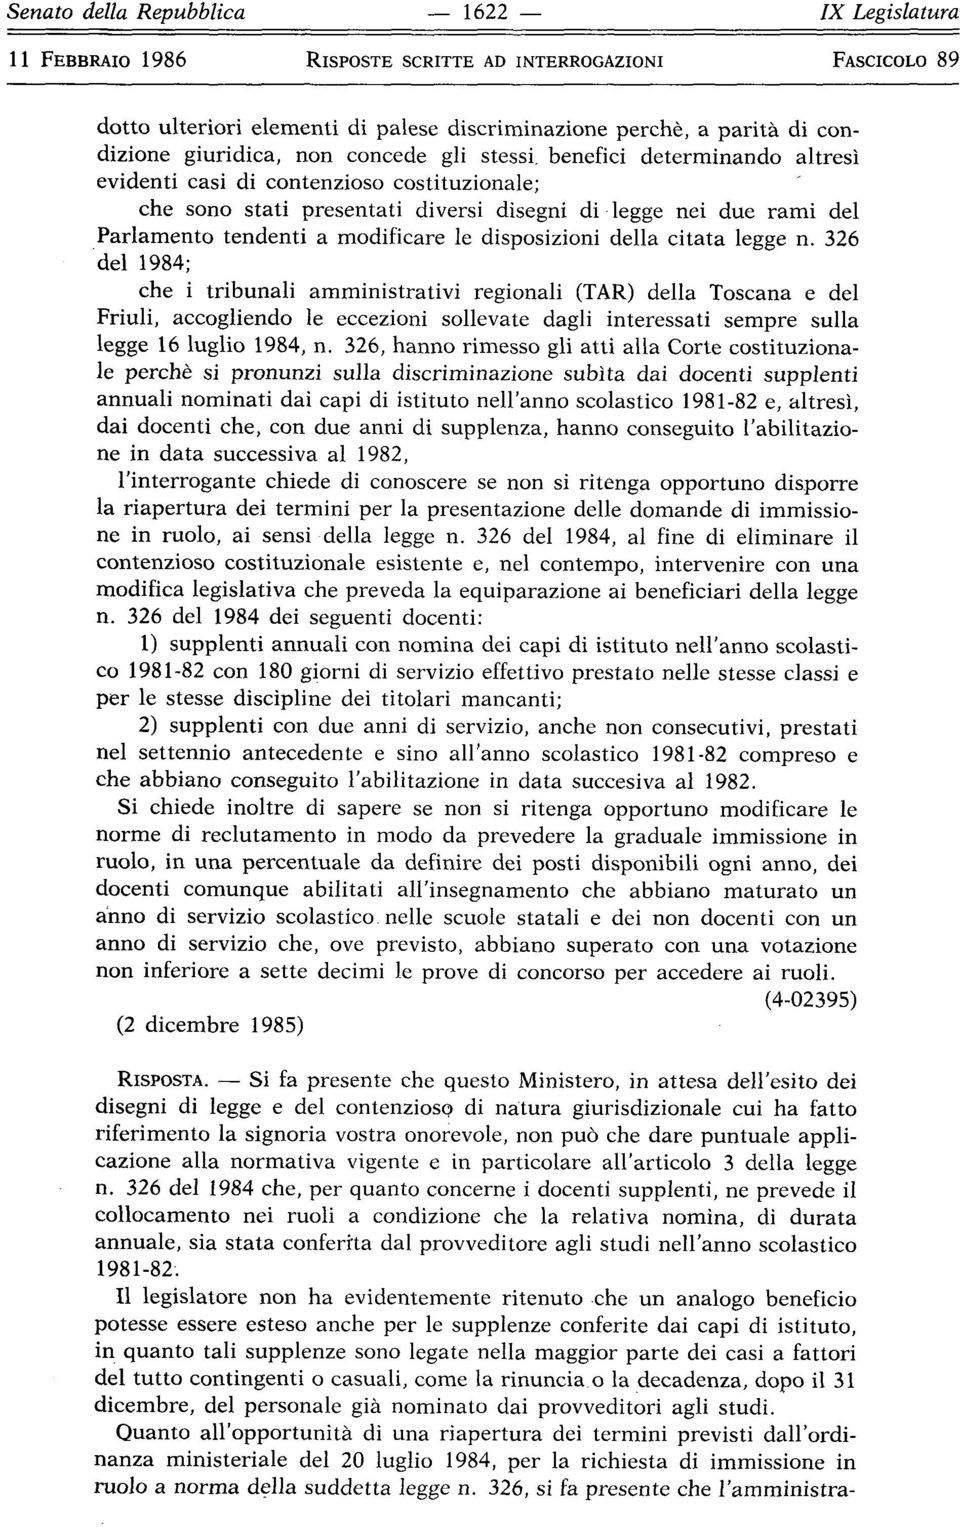 326 del 1984; che i tribunali amministrativi regionali (TAR) della Toscana e del Friuli, accogliendo le eccezioni sollevate dagli interessati sempre sulla legge 16 luglio 1984, n.